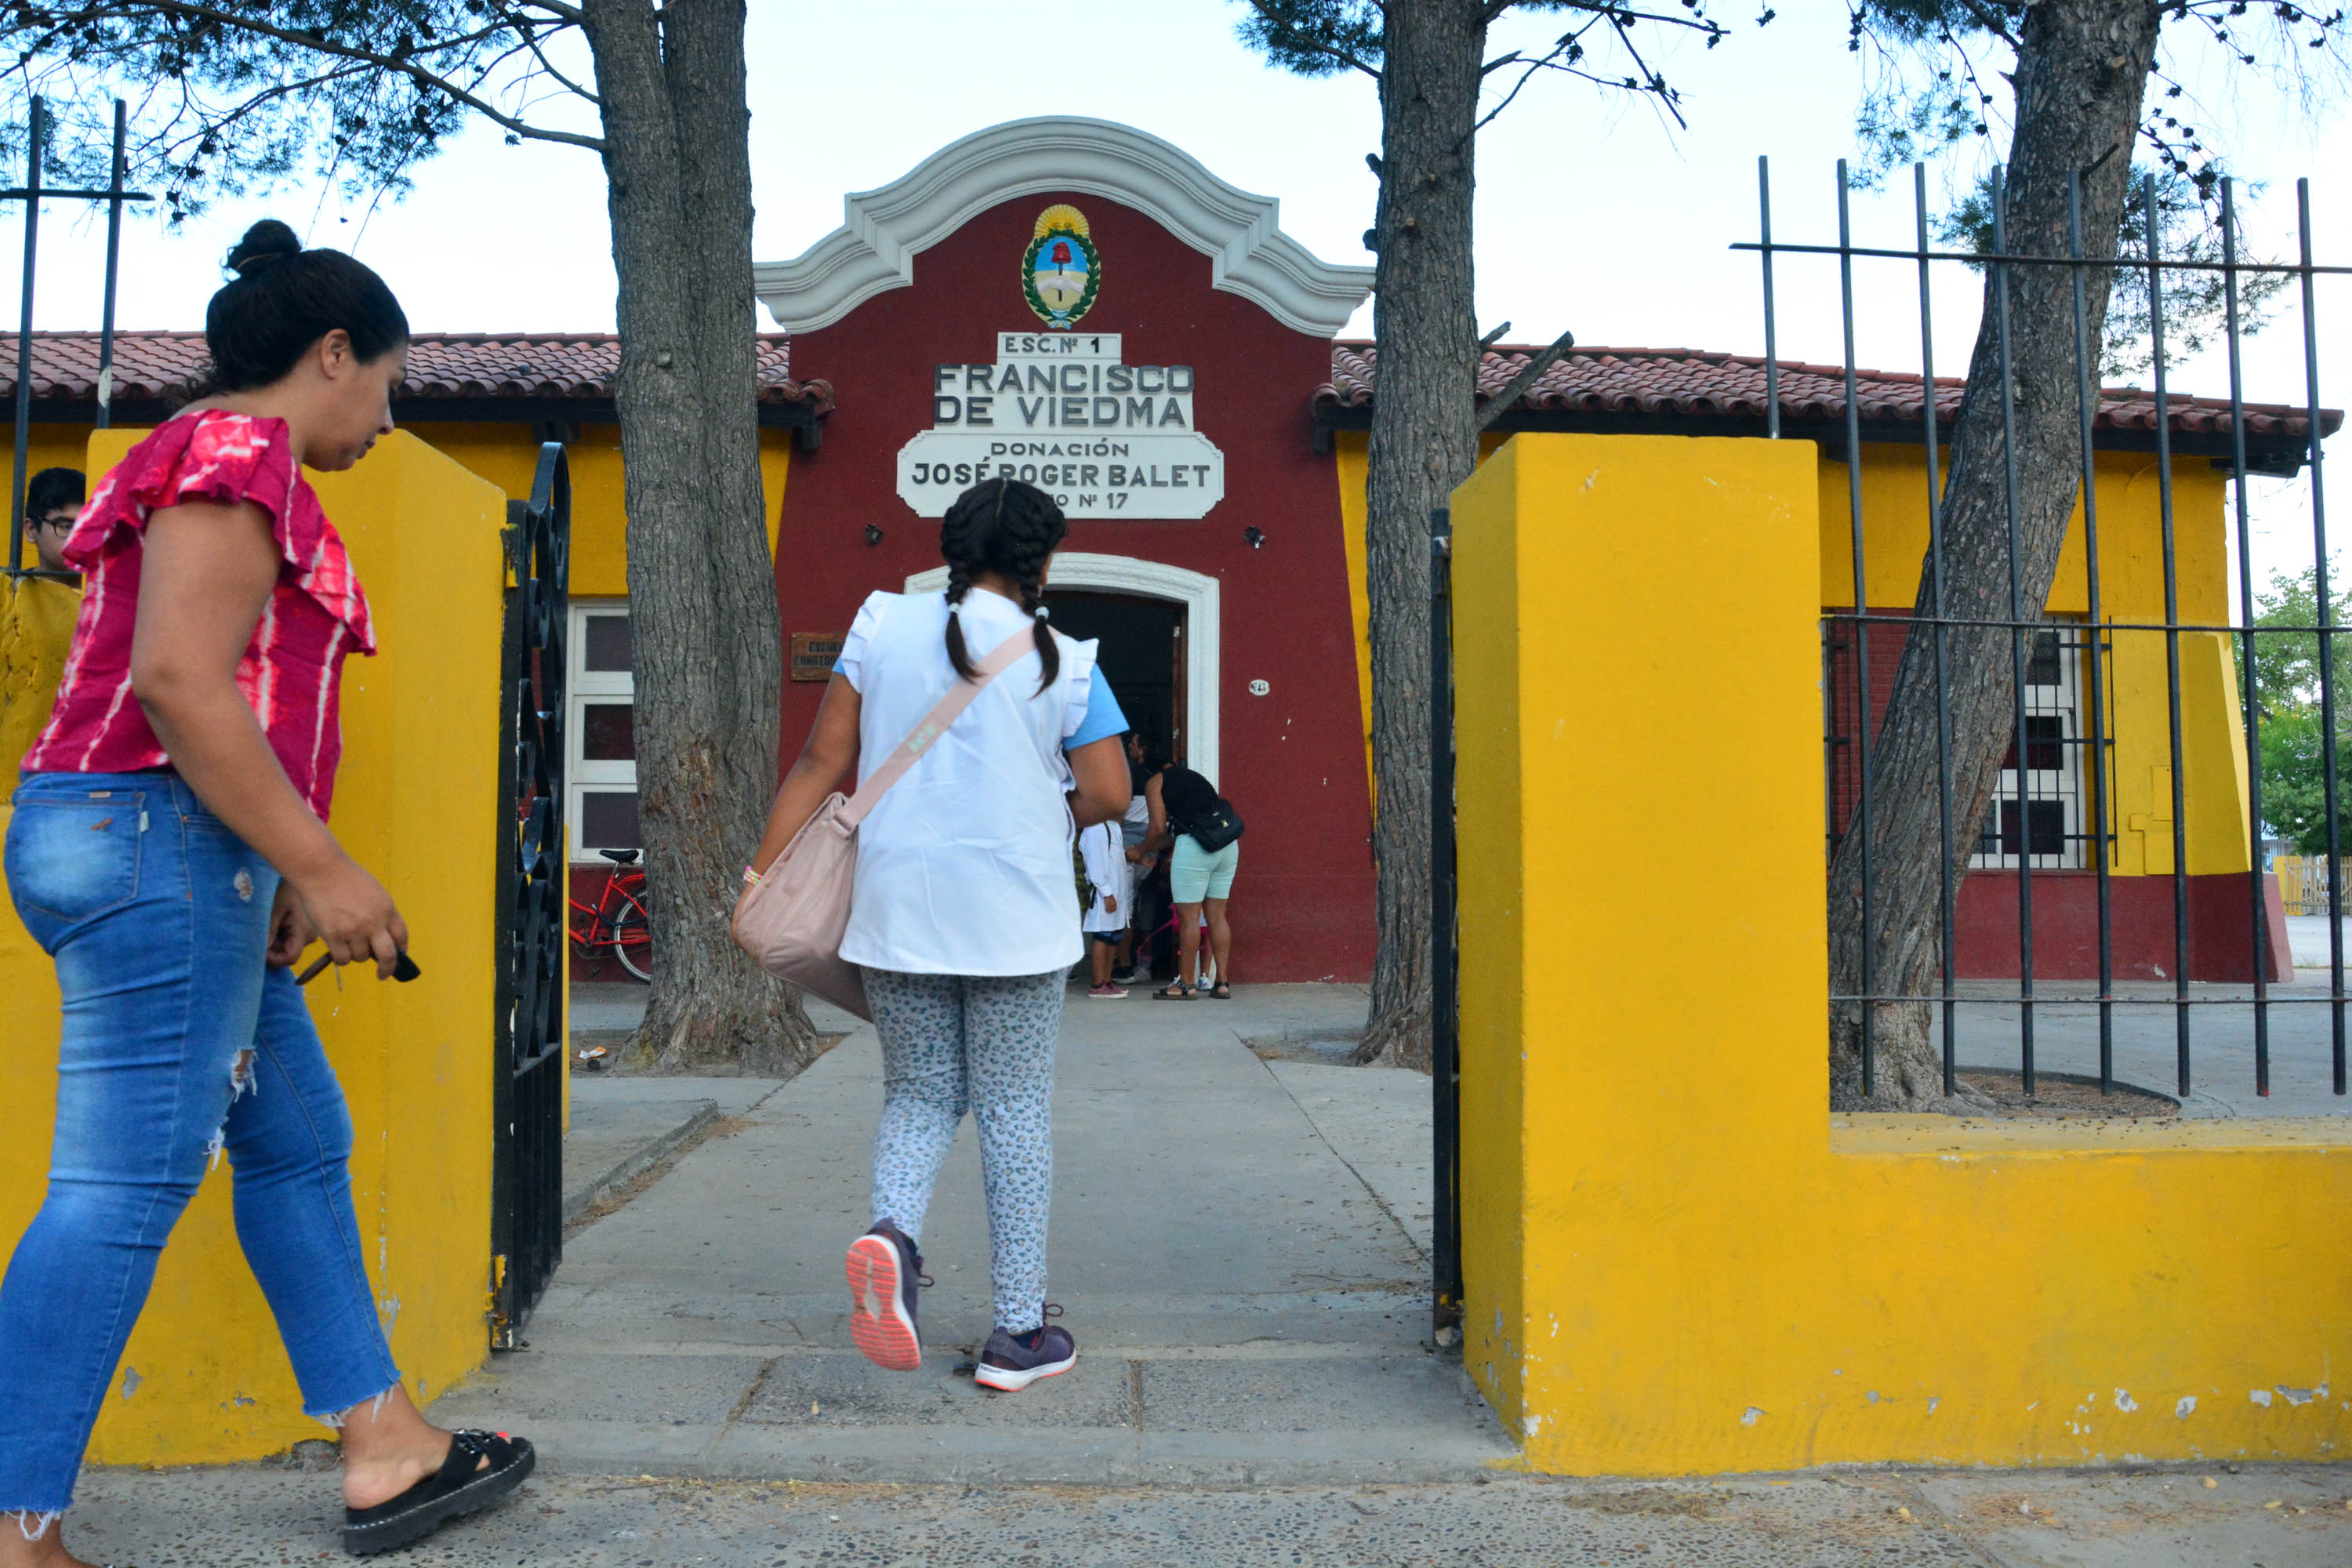 Comienzo escolar en Río Negro, con algunas complicaciones por paro de porteros.
La escuela primaria N°1 de Viedma arrancó sin inconvenientes
Foto: Marcelo Ochoa